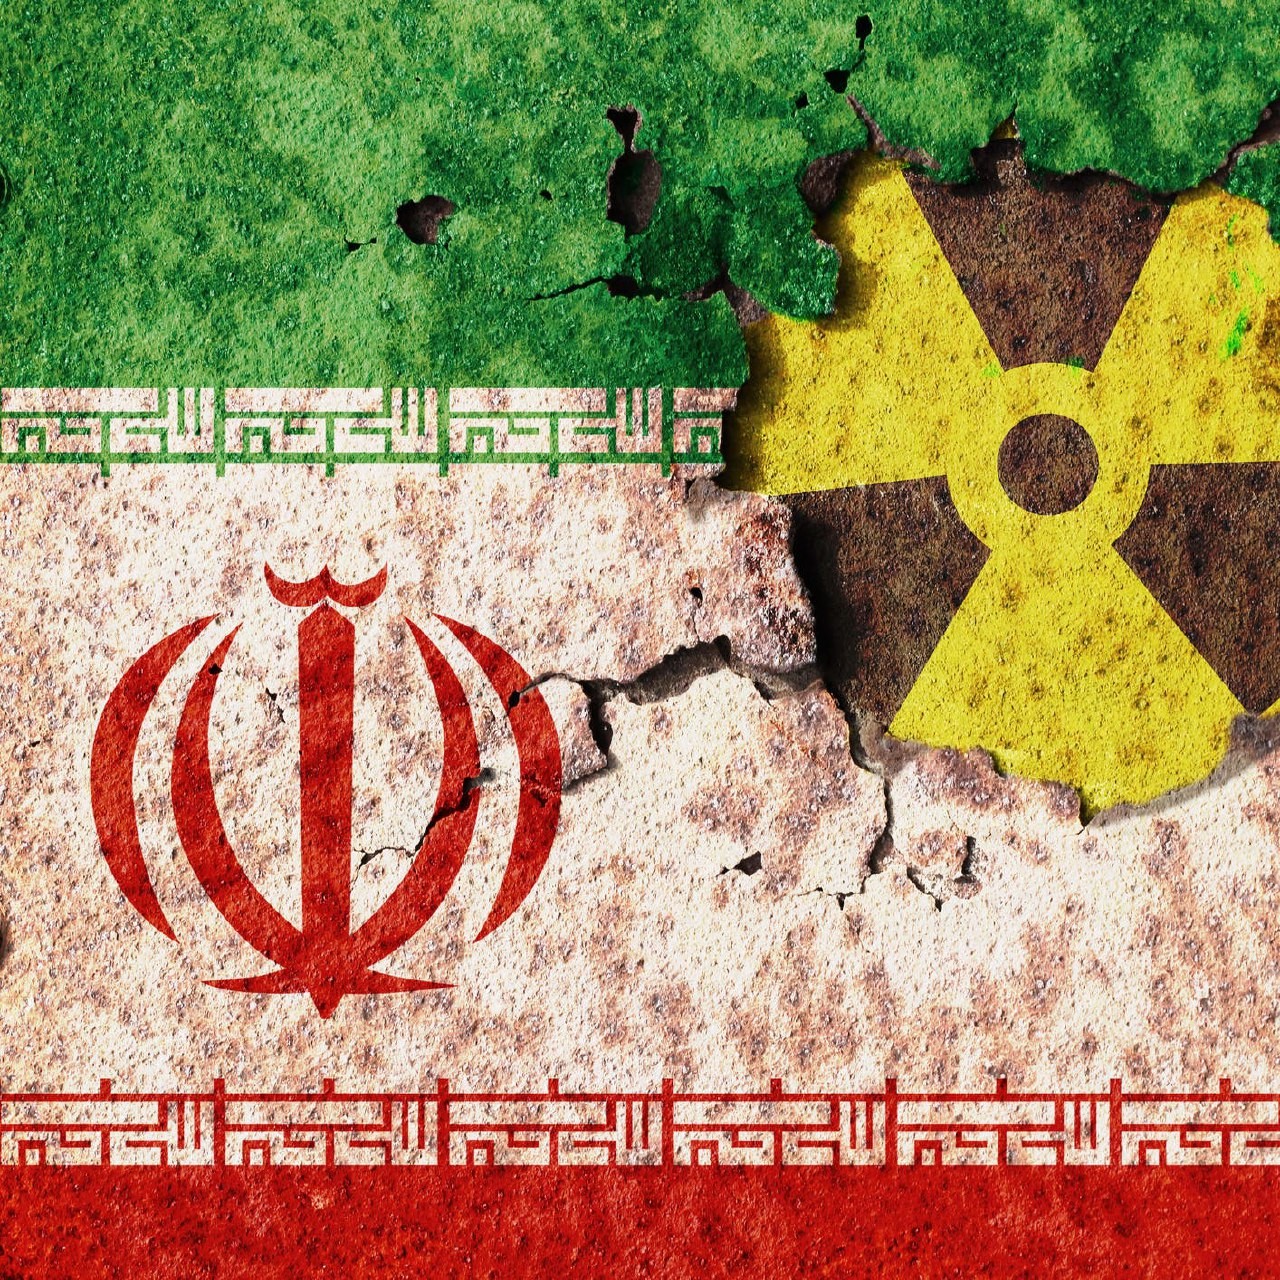 قدرت الوكالة الدولية للطاقة الذرية أن احتياطيات إيران من اليورانيوم المخصب بنسبة 20% وصلت إلى 84.3 كيلوغرام